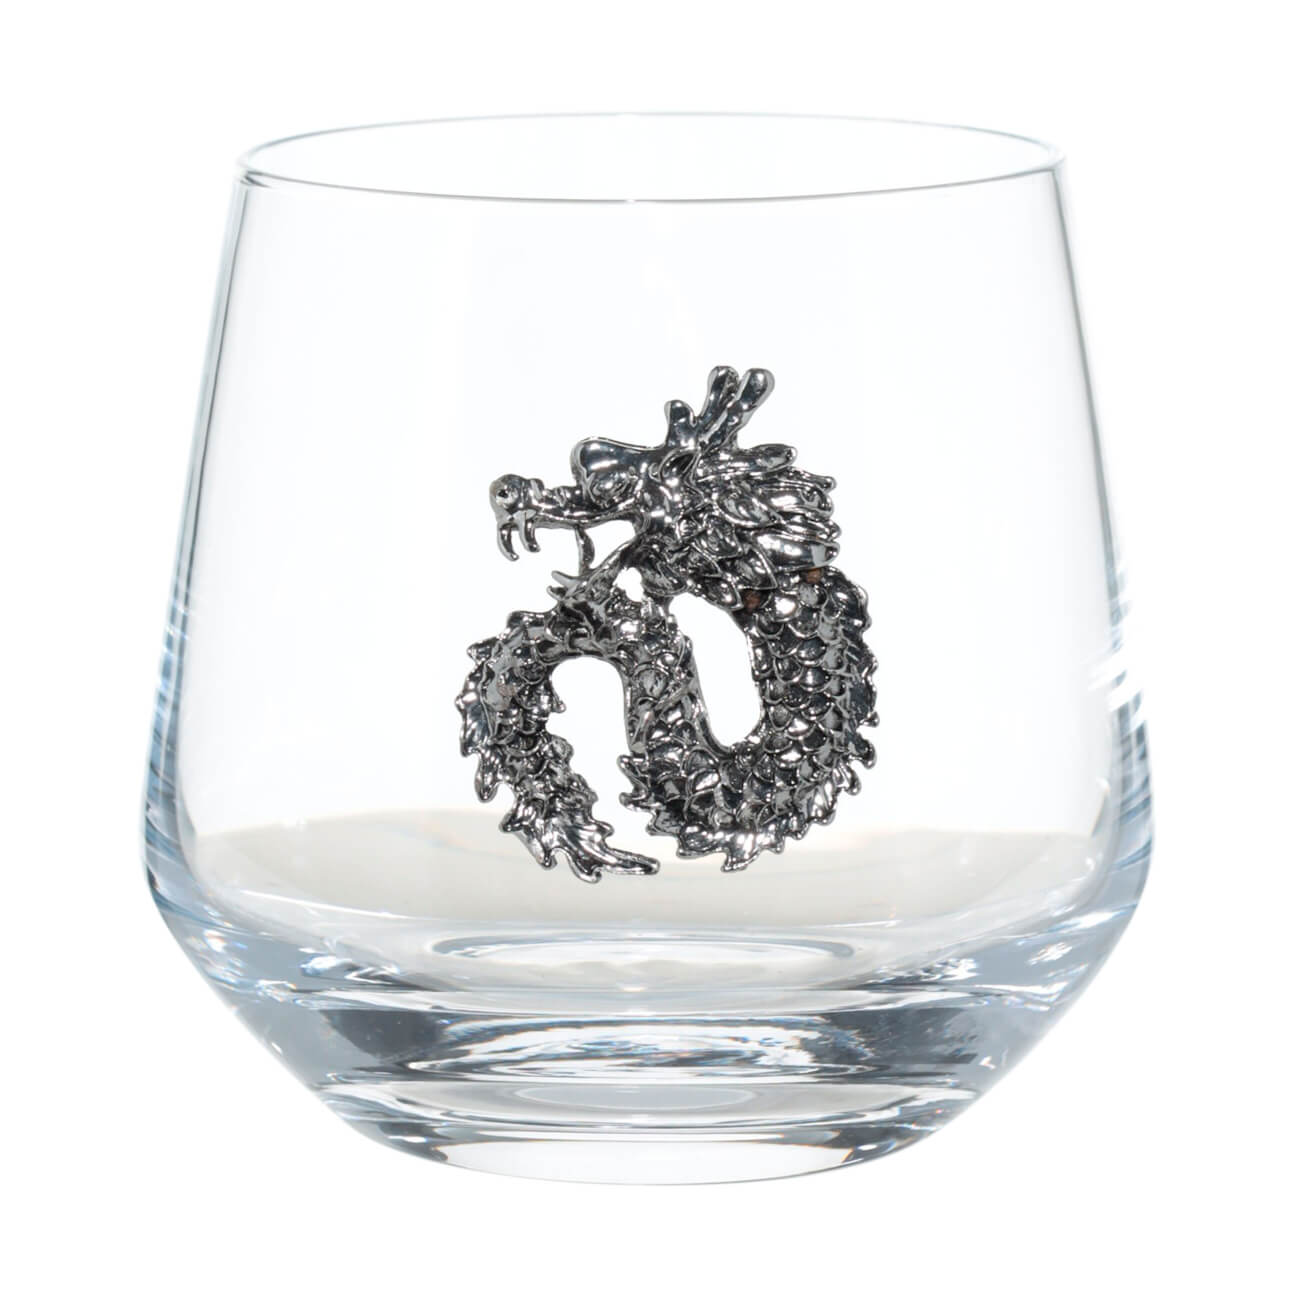 Стакан для виски, 370 мл, стекло/металл, Серебристый дракон, Lux elements elements бокалы для виски 2 шт